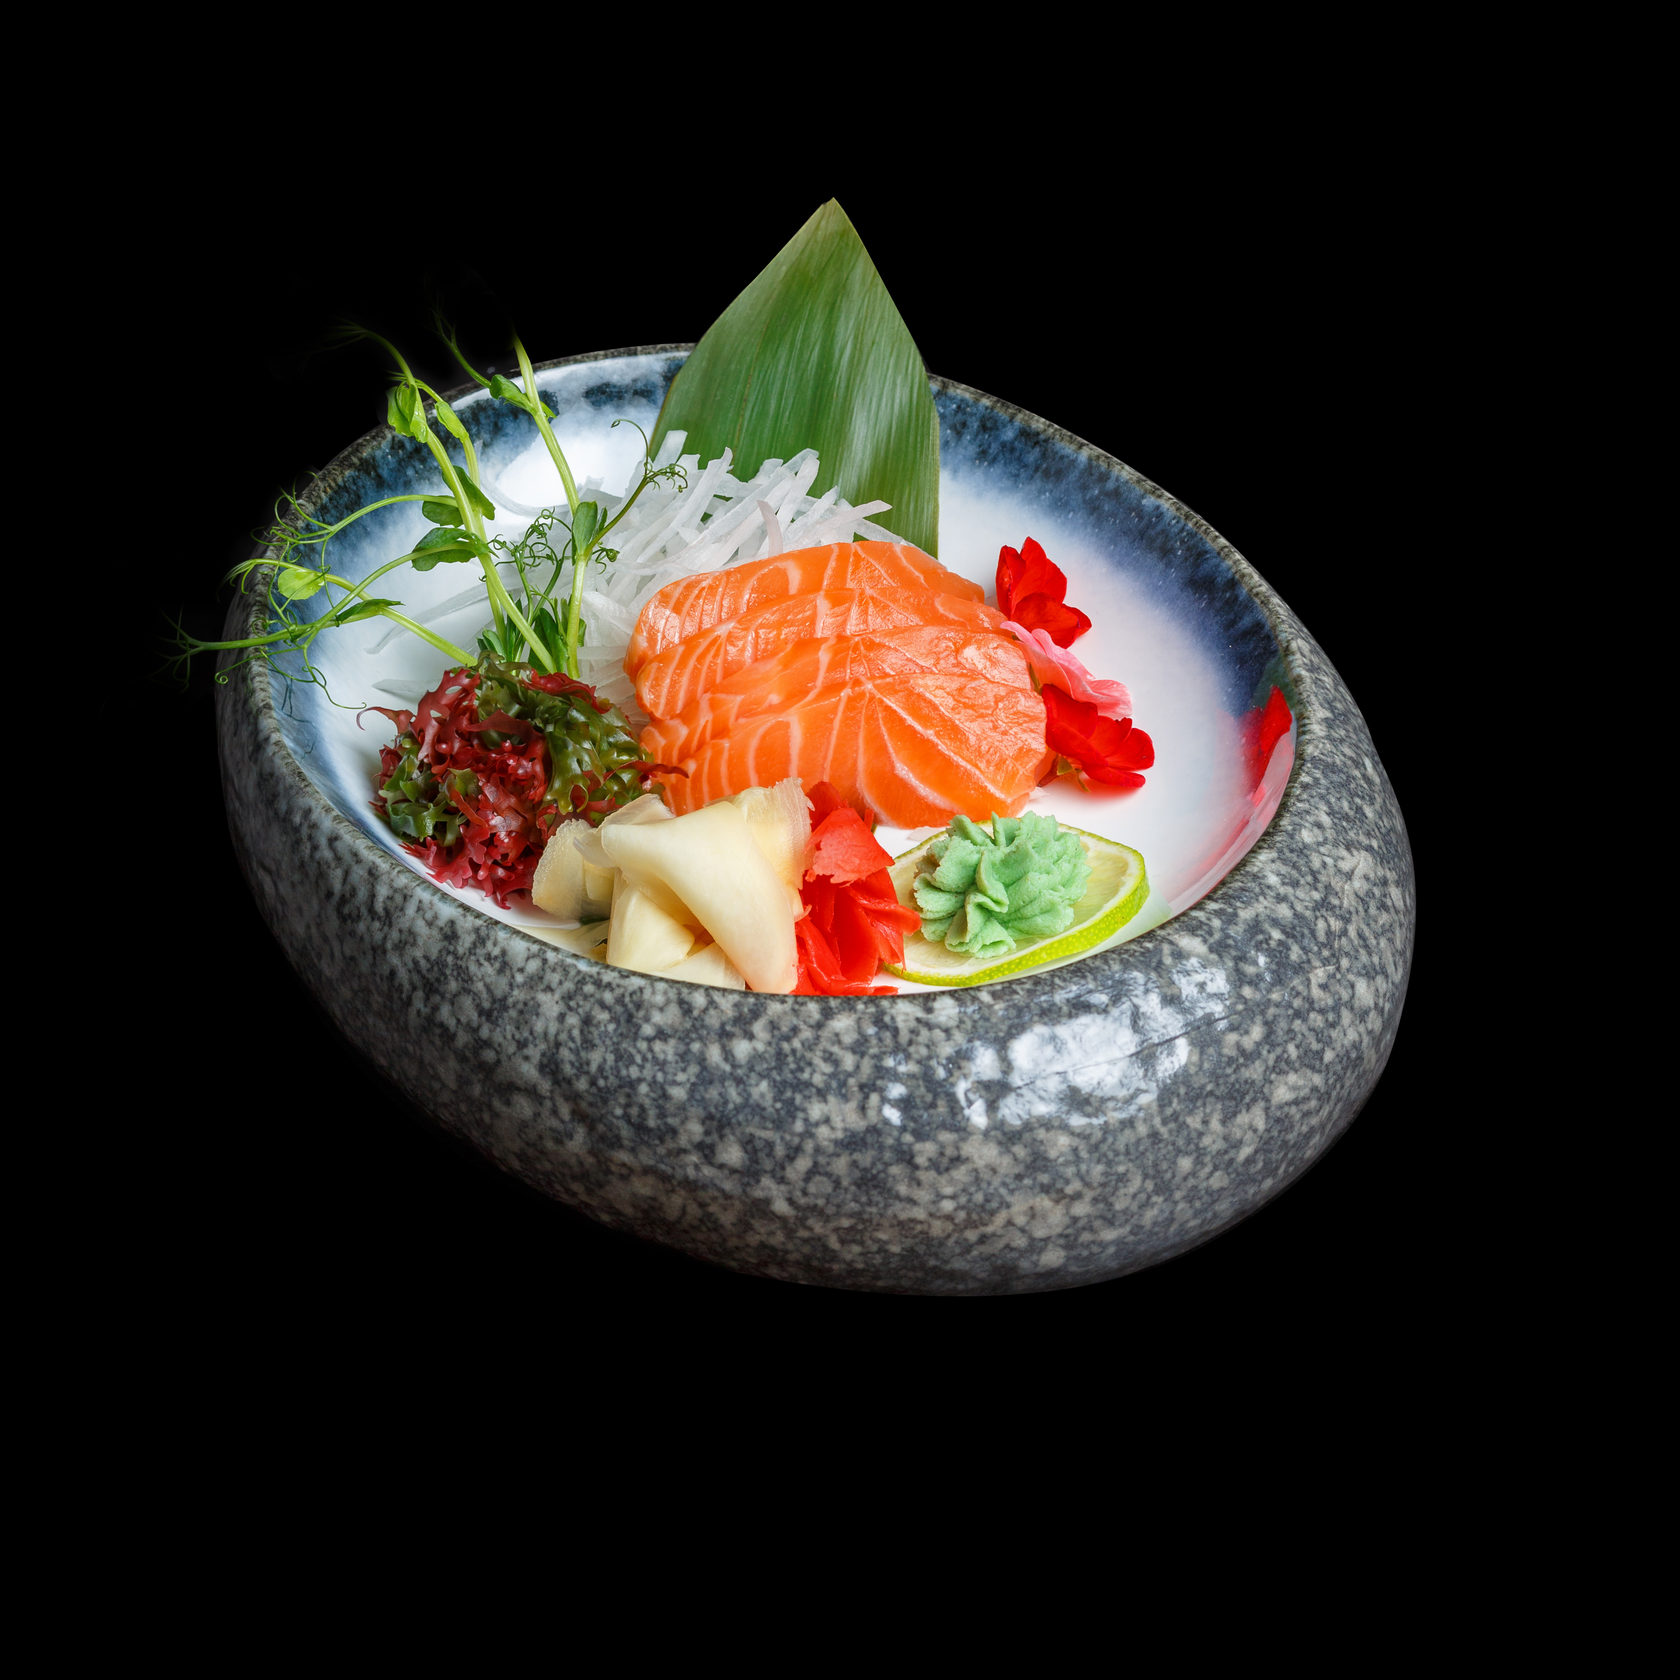 Сашими из лосося, пошаговый рецепт на 561 ккал, фото, ингредиенты - Светлана♥